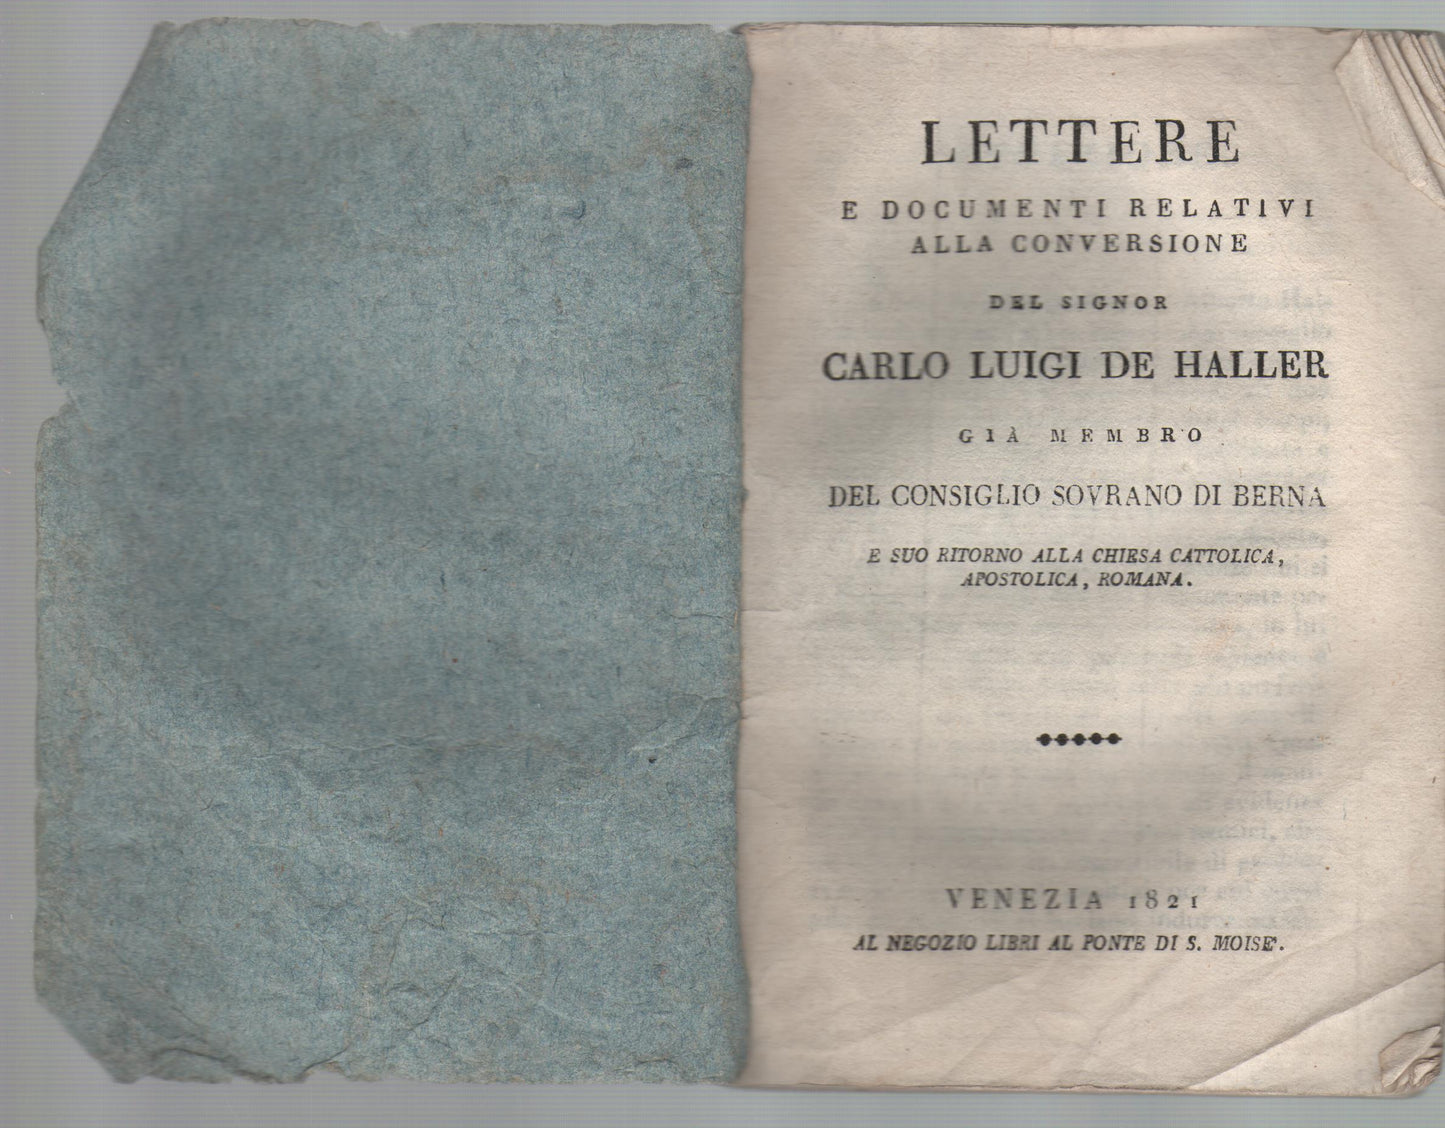 Lettere e documenti relativi alla conversione del signor Luigi de Haller